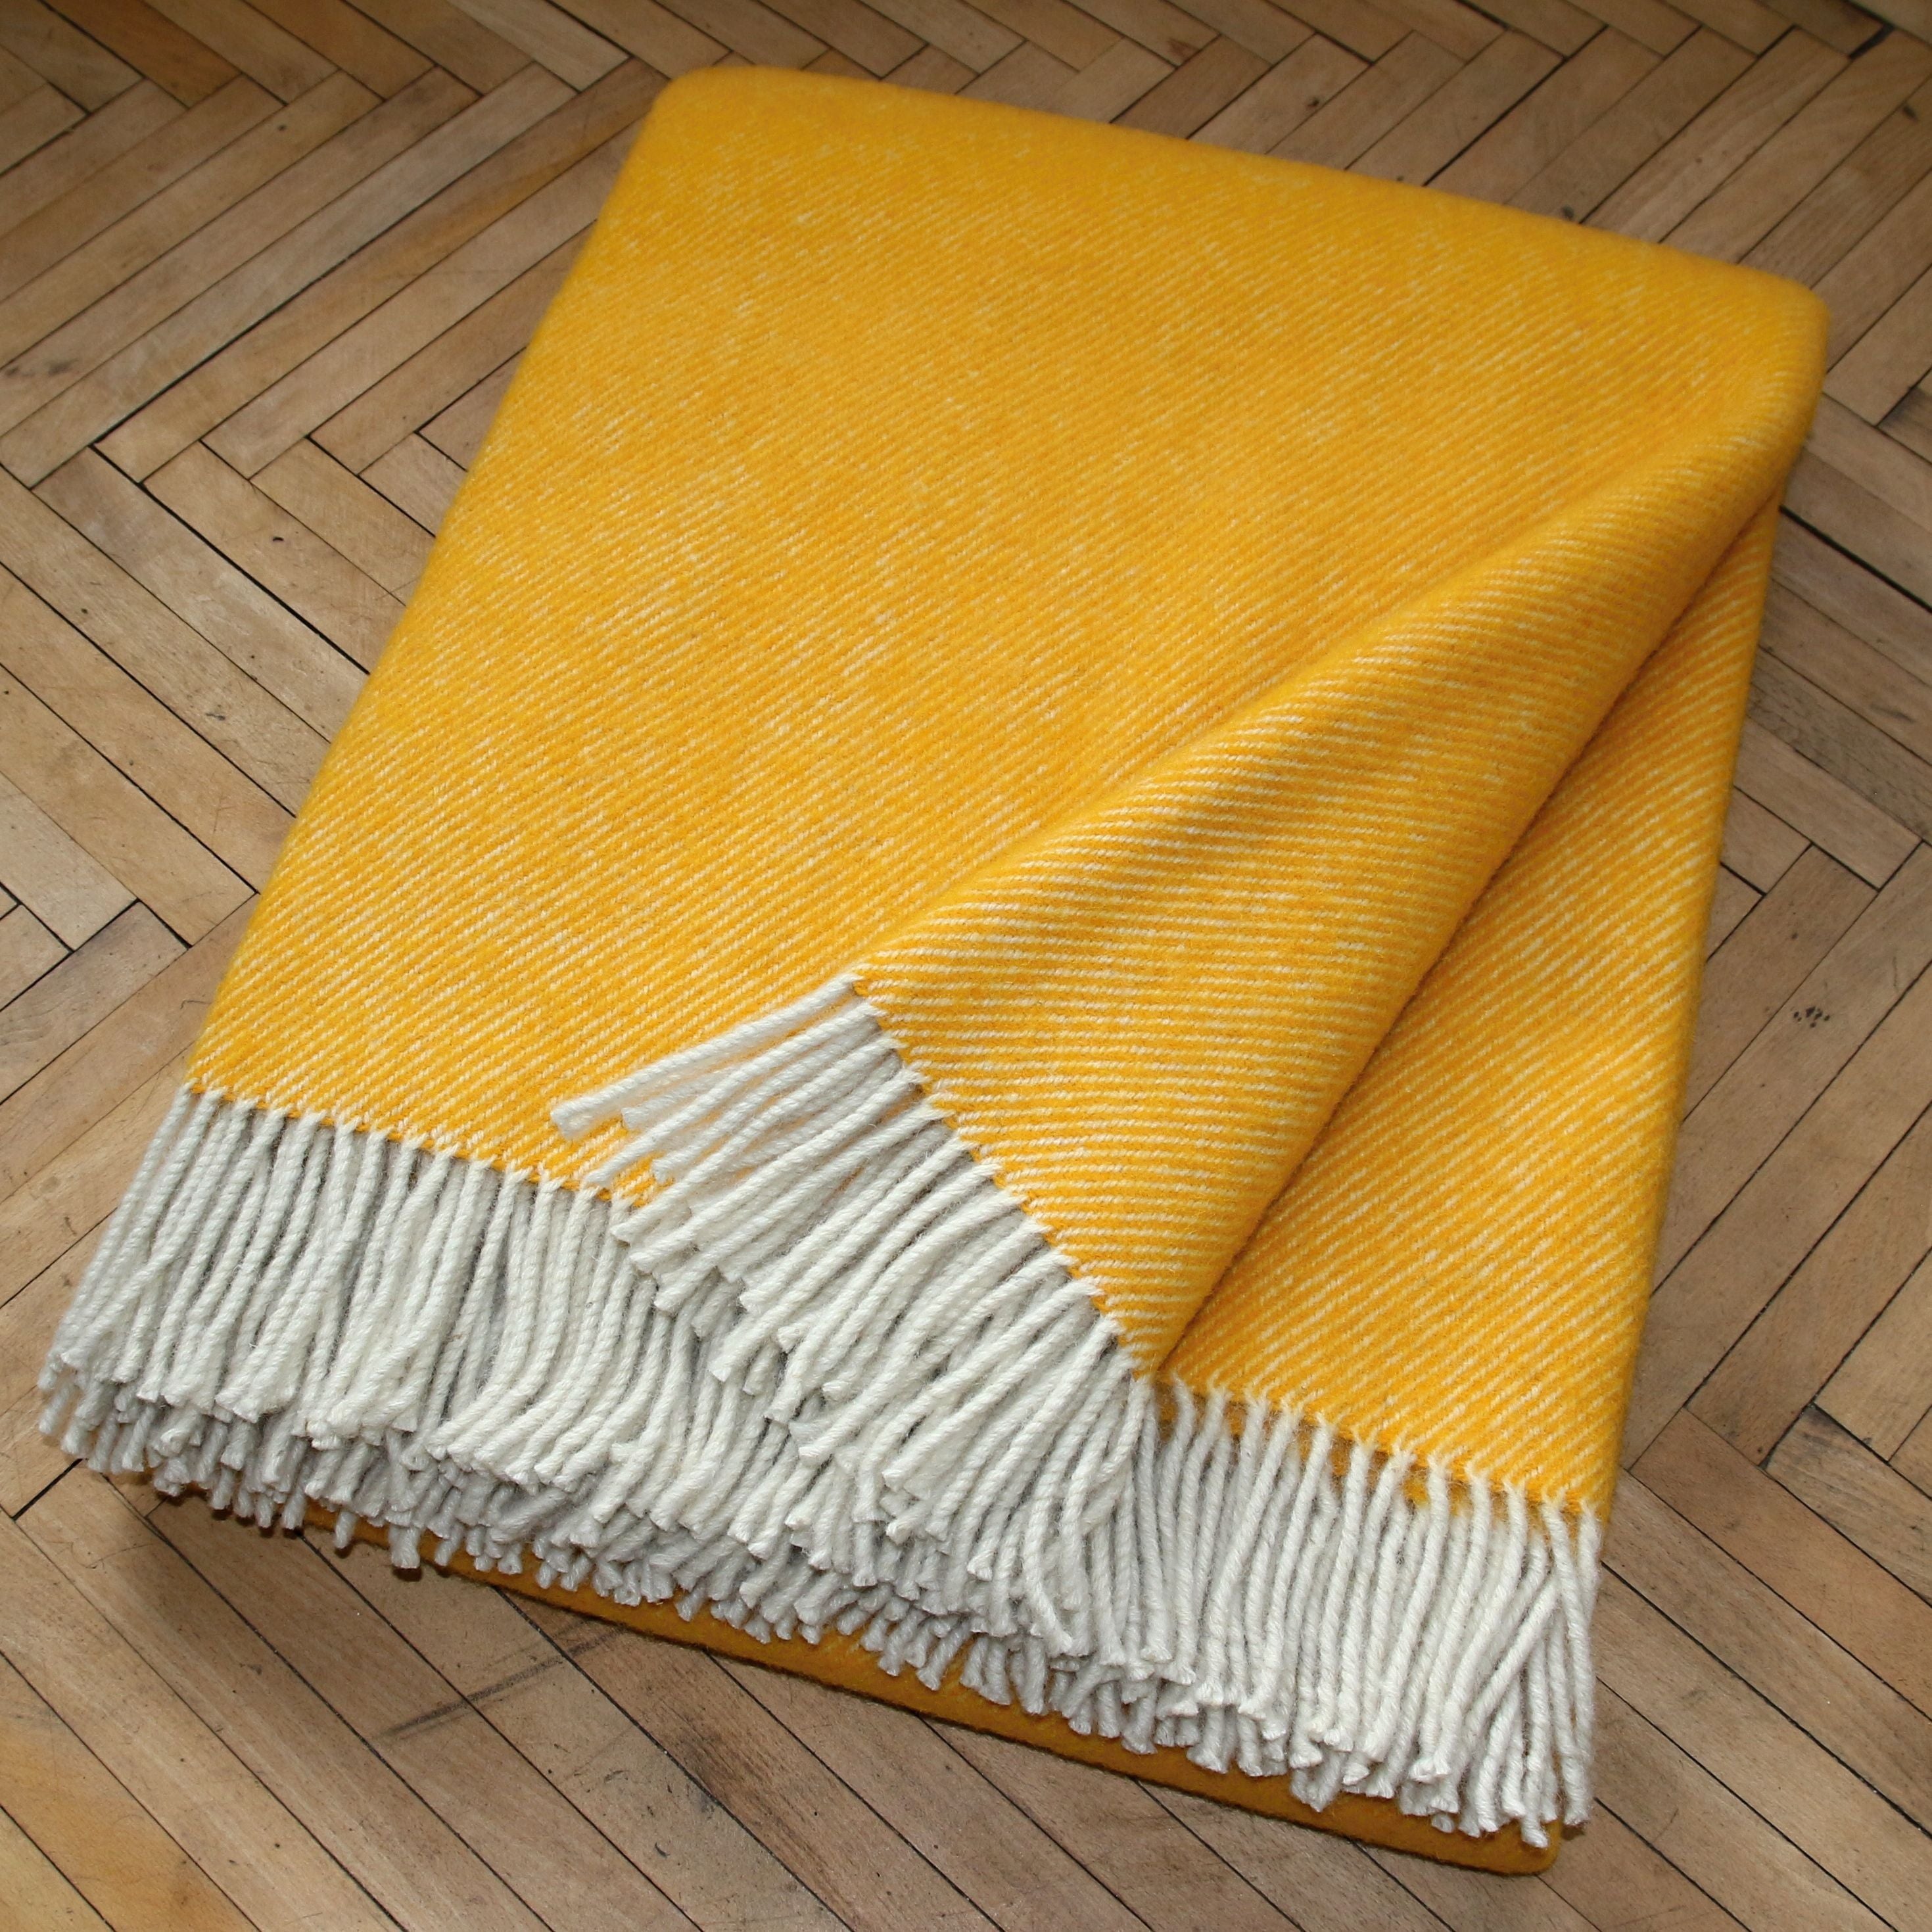 Sheep wool blanket - yellow